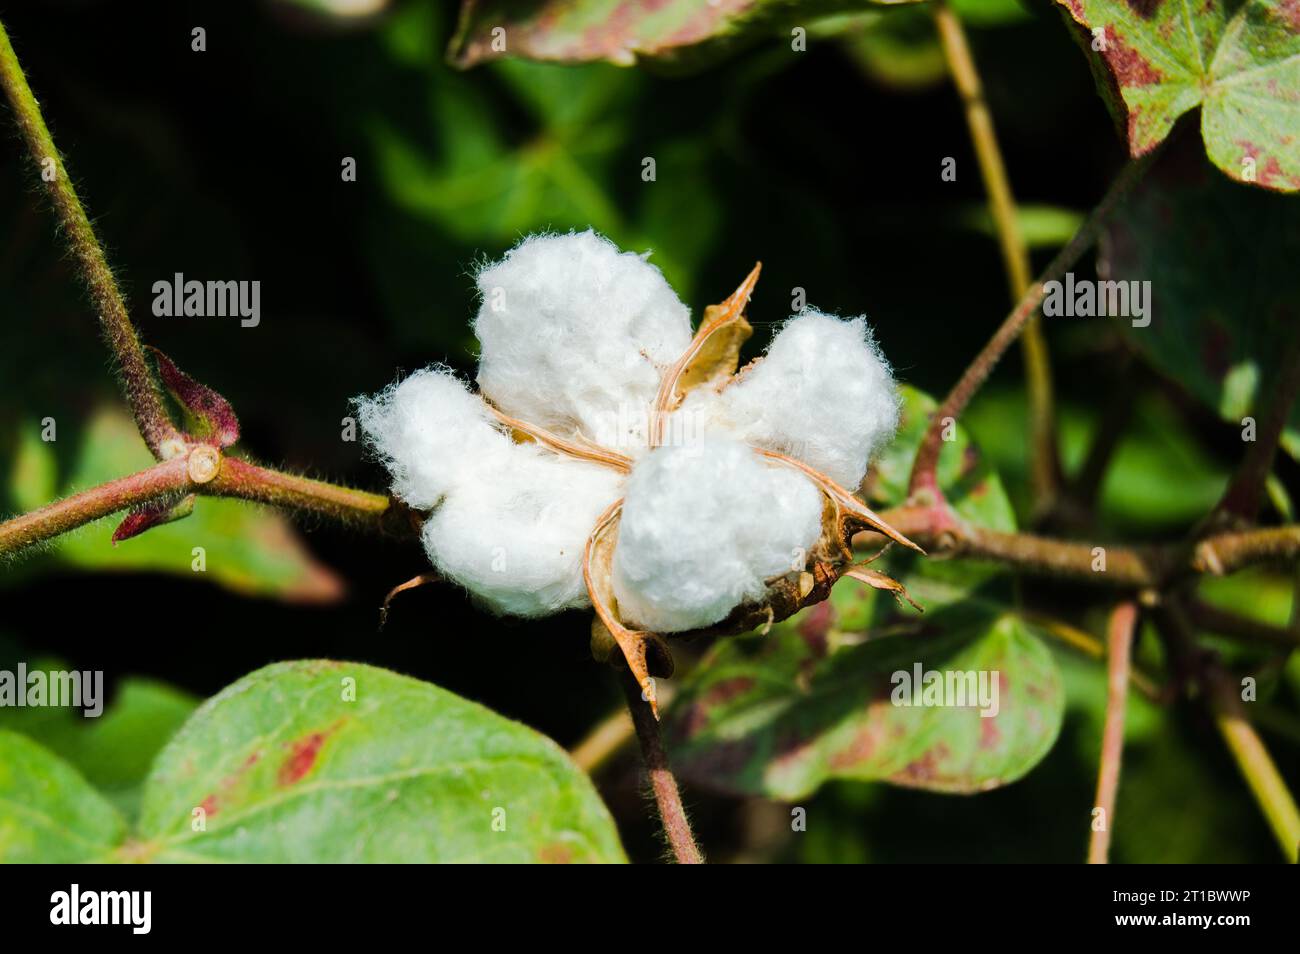 Gossypium Herbaceum Nahaufnahme mit frischen Samenkapseln. Baumwollboll hängt an der Pflanze. Mit selektivem Fokus auf das Motiv. Nahaufnahme der weißen Baumwollblume. Stockfoto